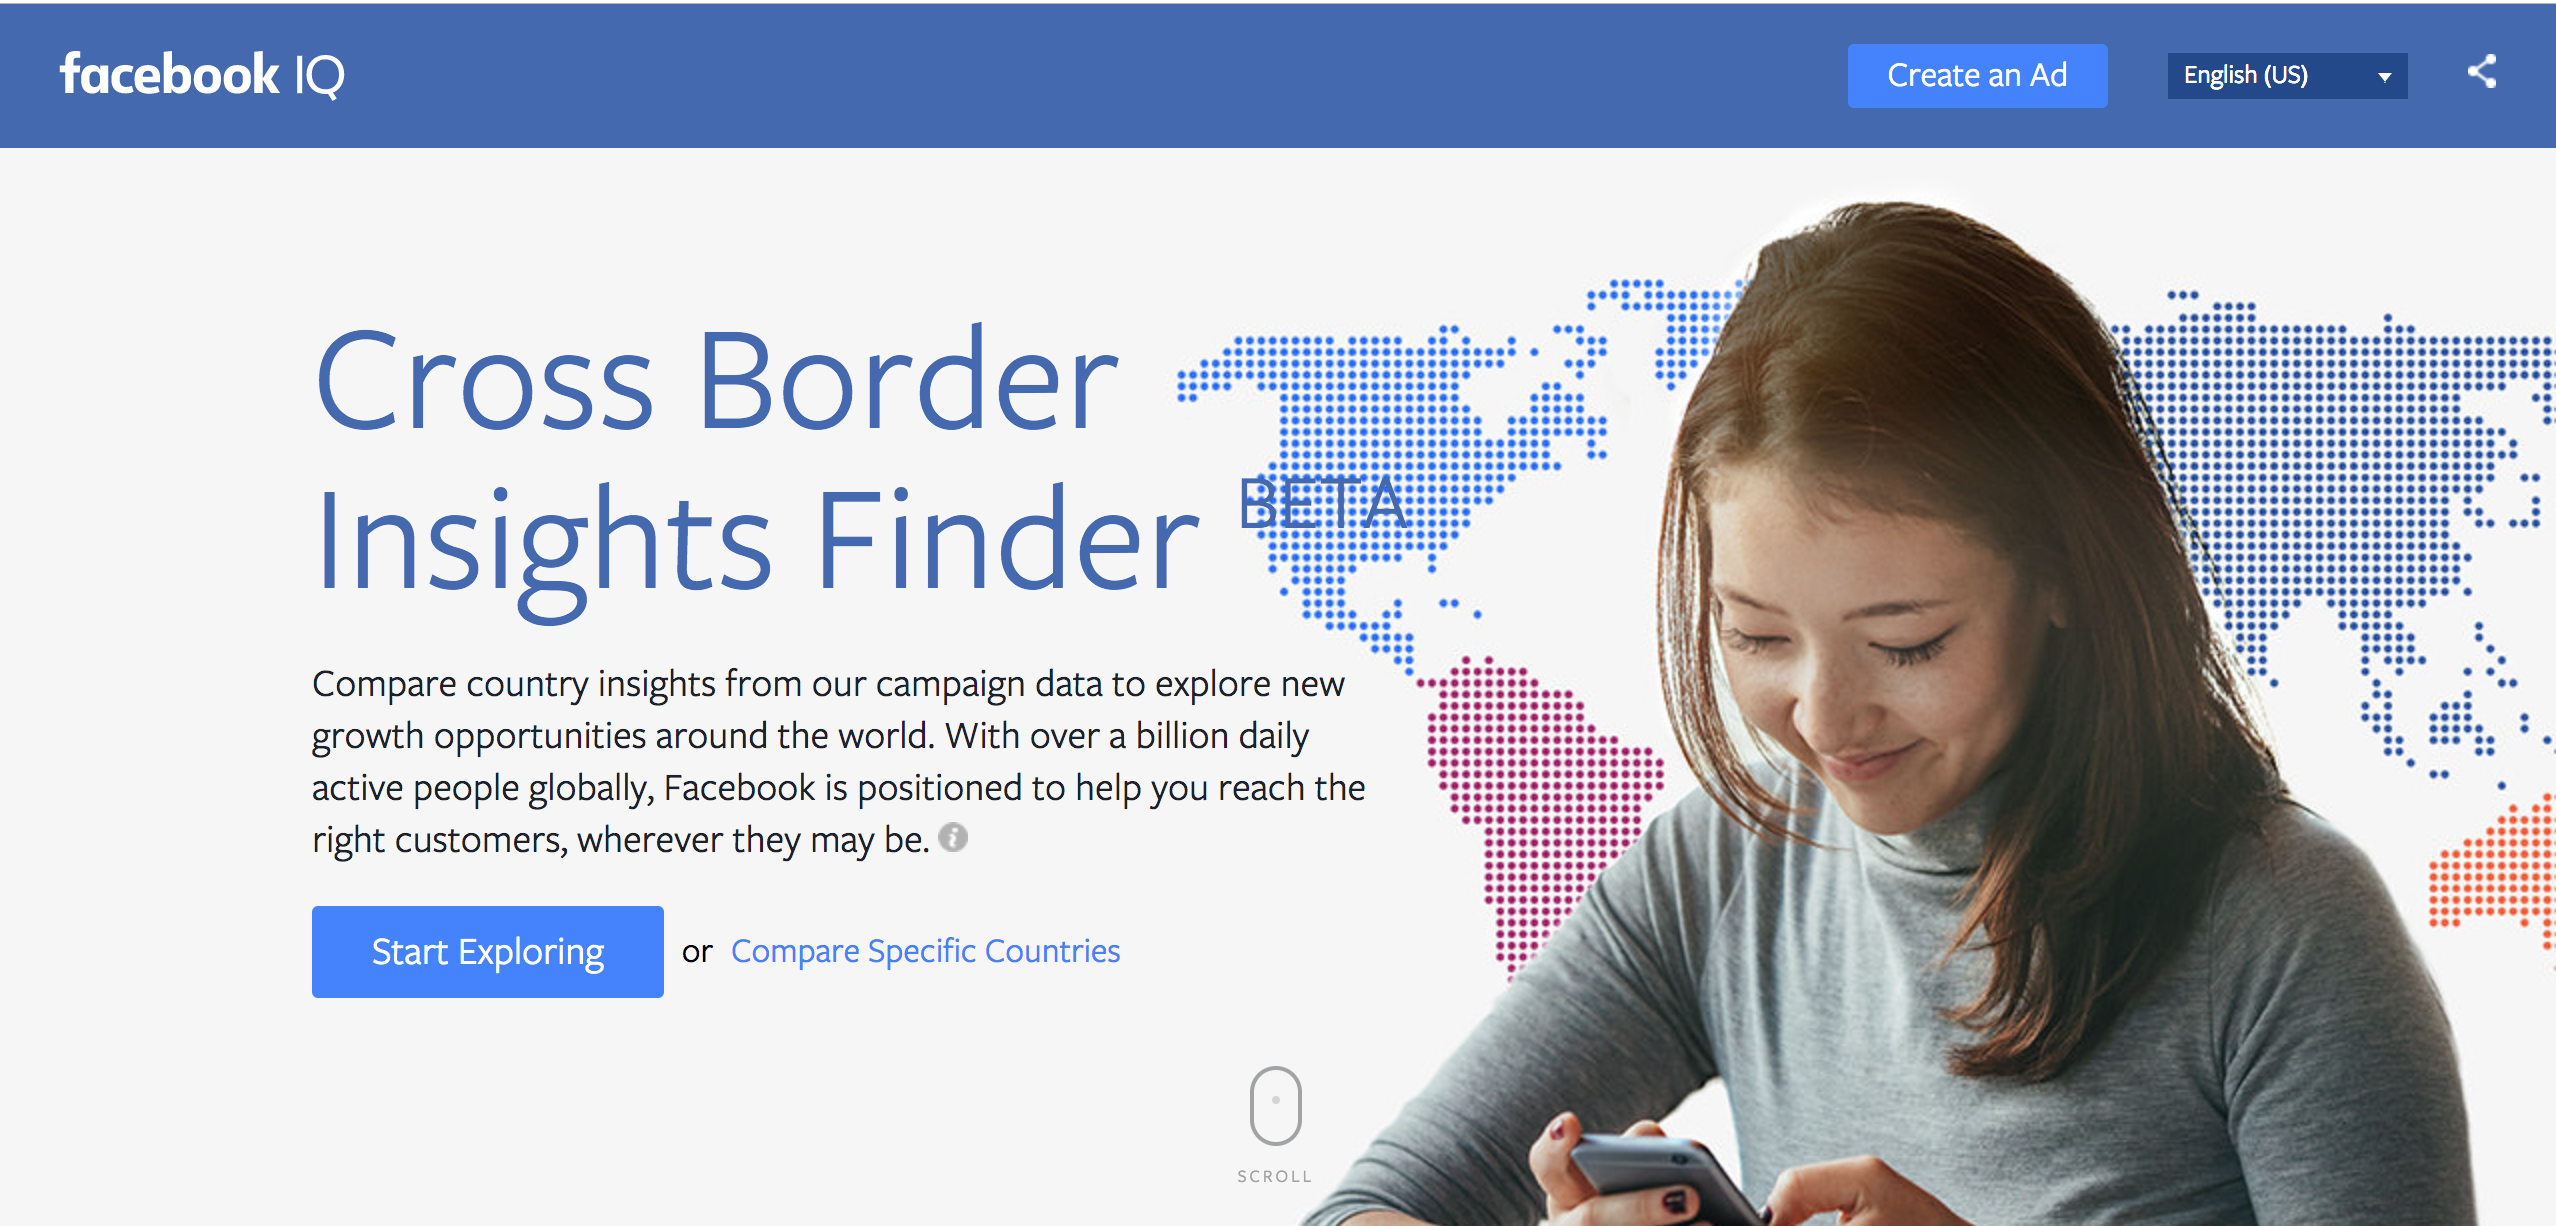 Cross Border Insights Finder